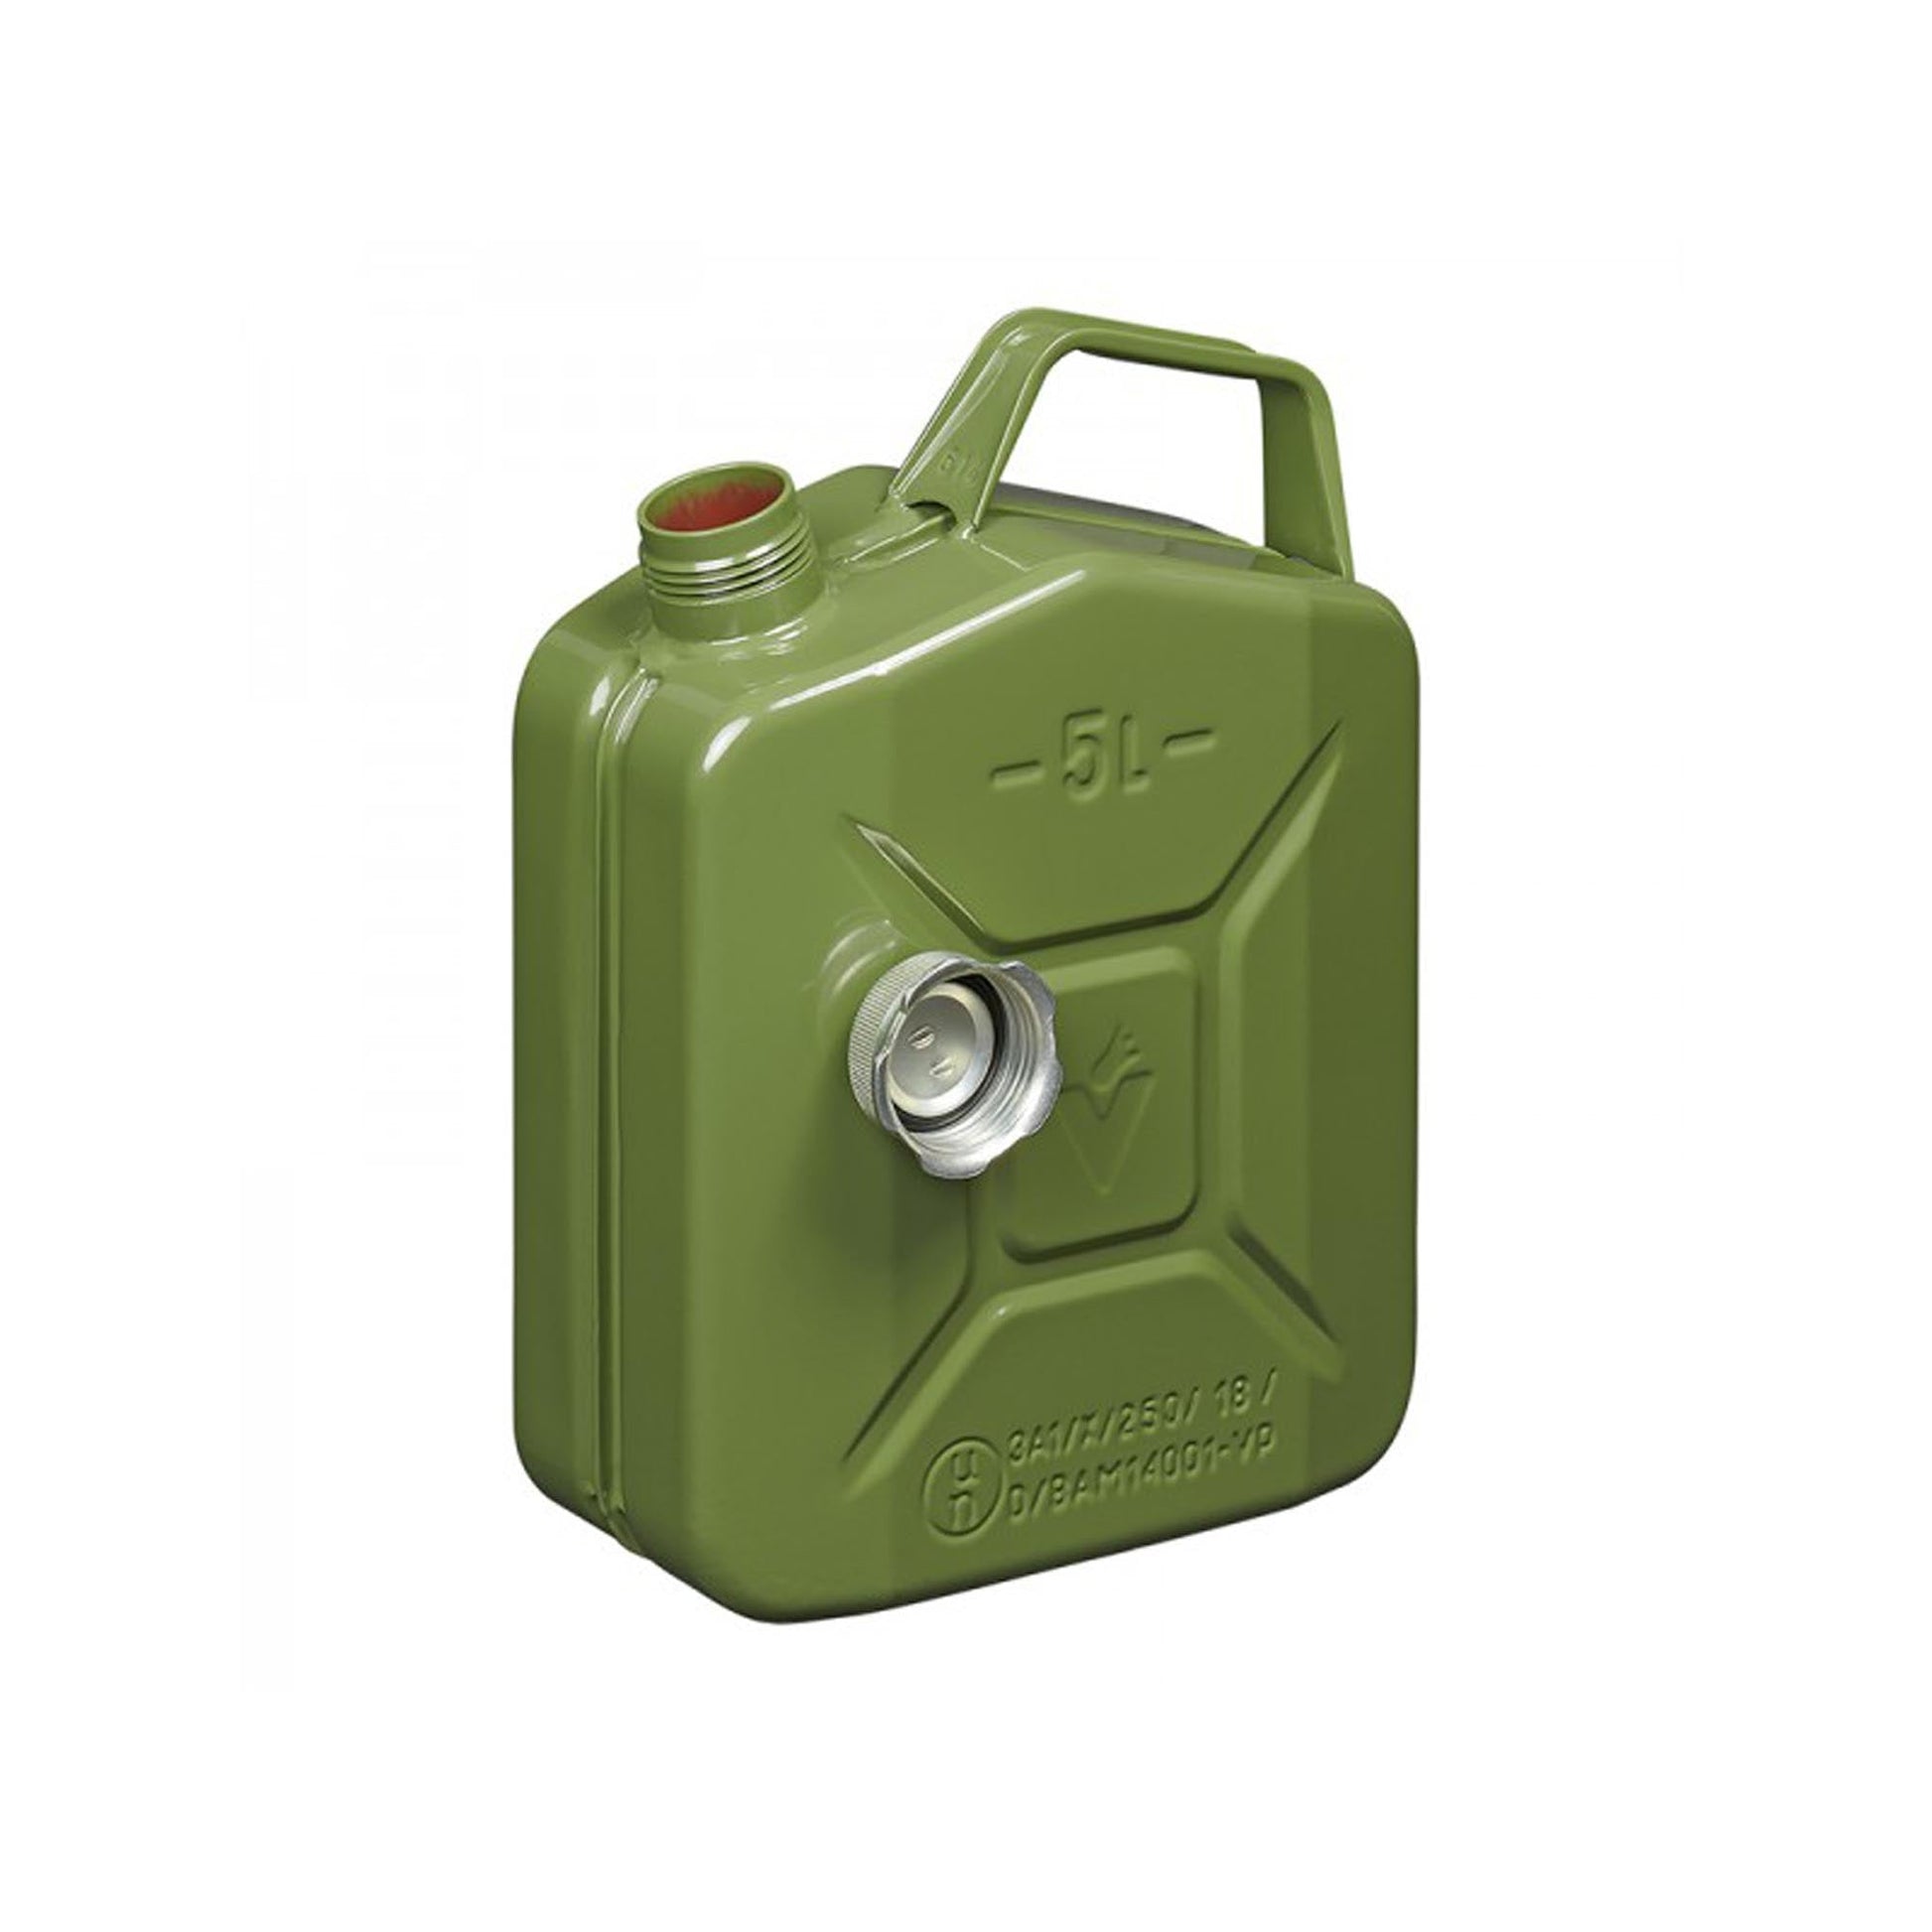 Benzinkanister 5L metall grün mit magnetischem Schraubverschluss UN- & TüV/ GS-geprüft –